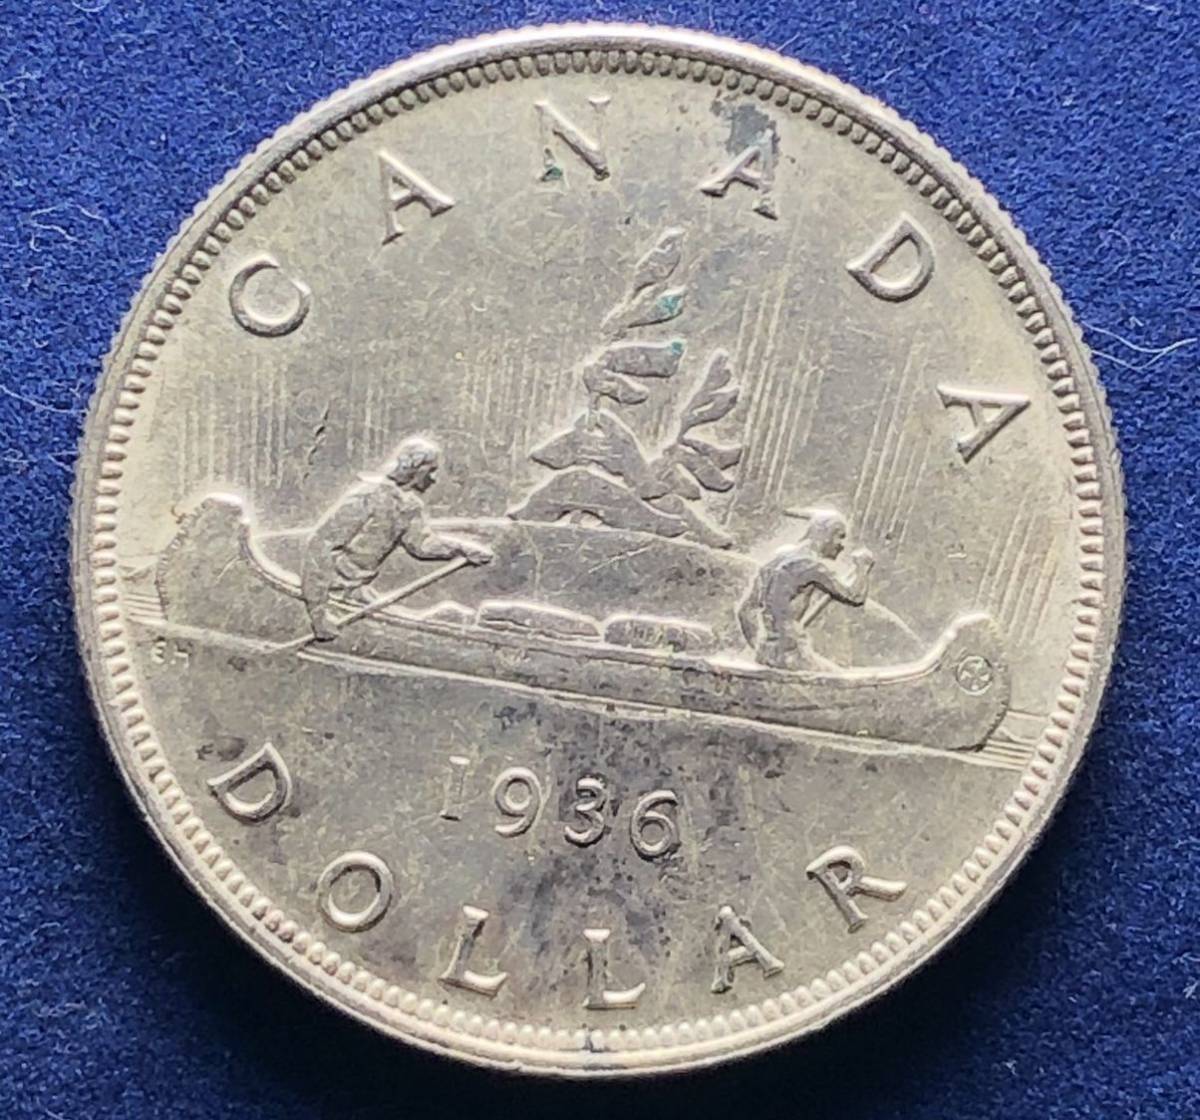  原文:イギリス領カナダ銀貨 1936年 1ドル 23.3g ジョージ5世 